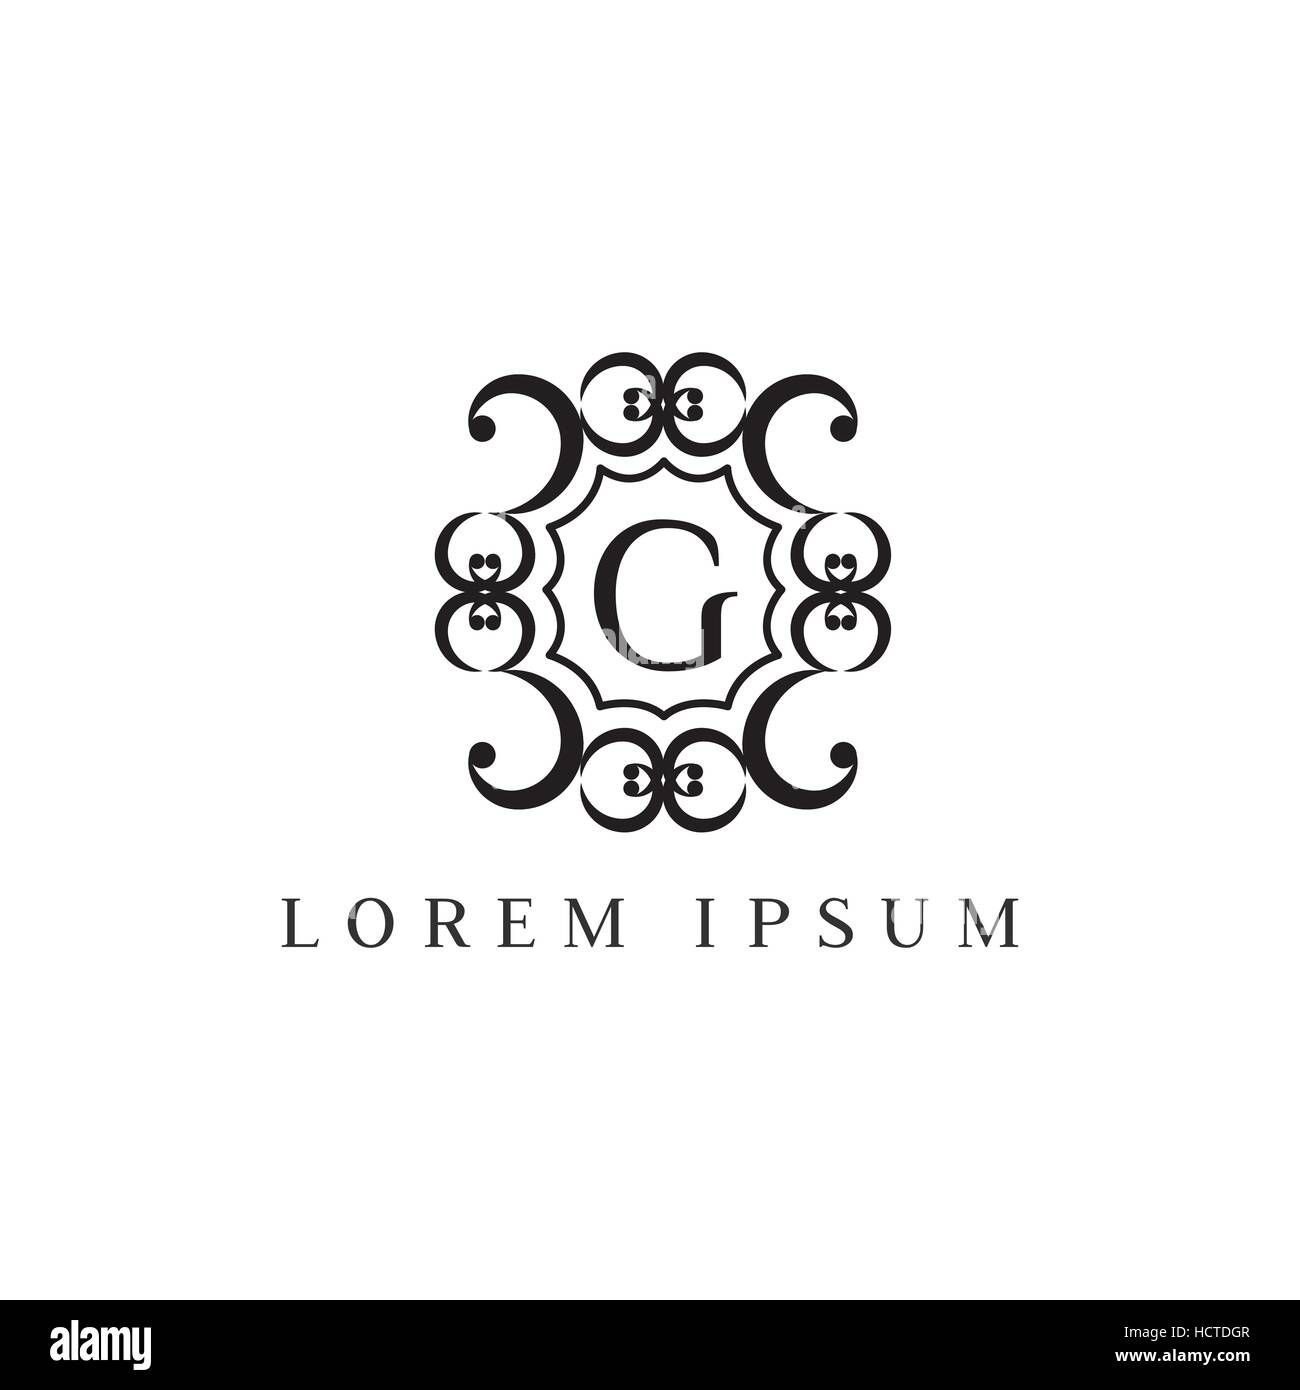 Vecteur de luxe logo design Modèle de lettre G. Illustration de Vecteur